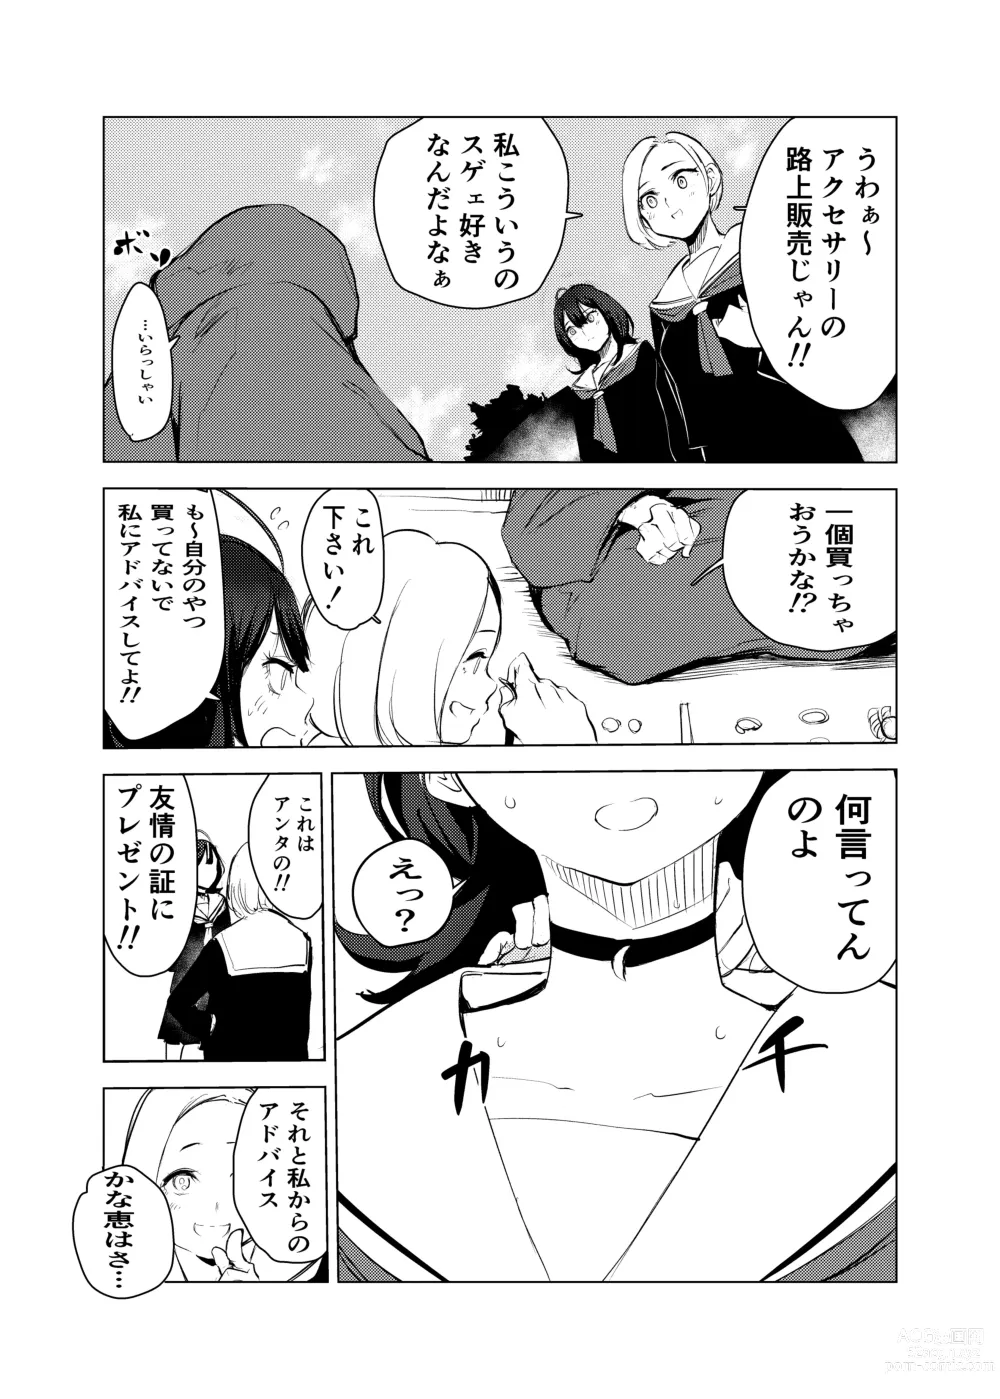 Page 4 of doujinshi Neko no Ongaeshi